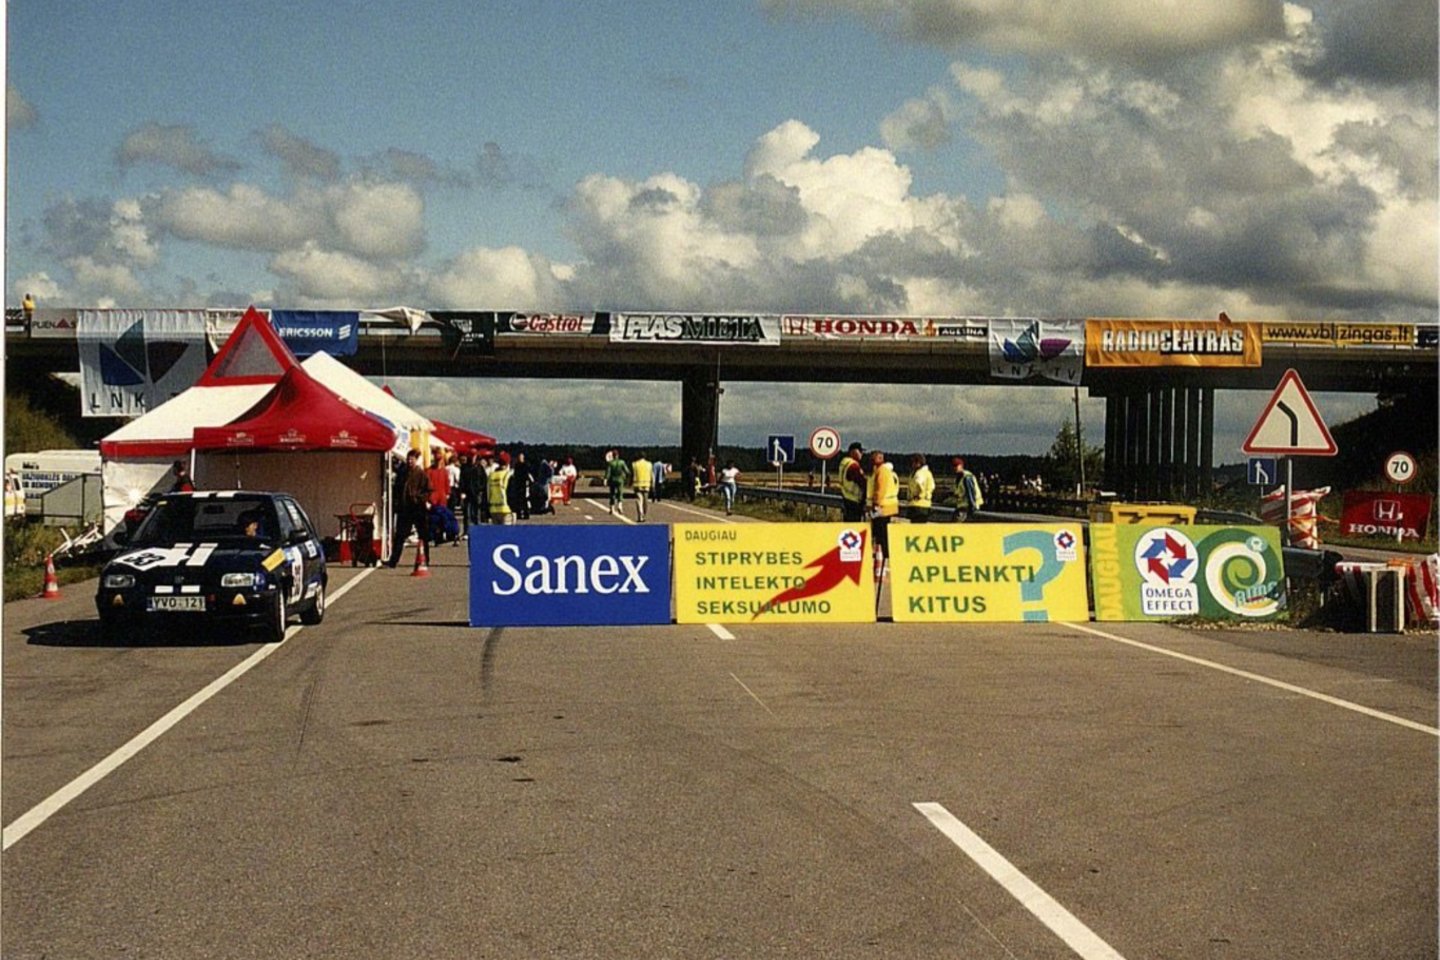  2001 metais Palangoje vykusių 1000 km lenktynių akimirkos. <br> Organizatorių nuotr.